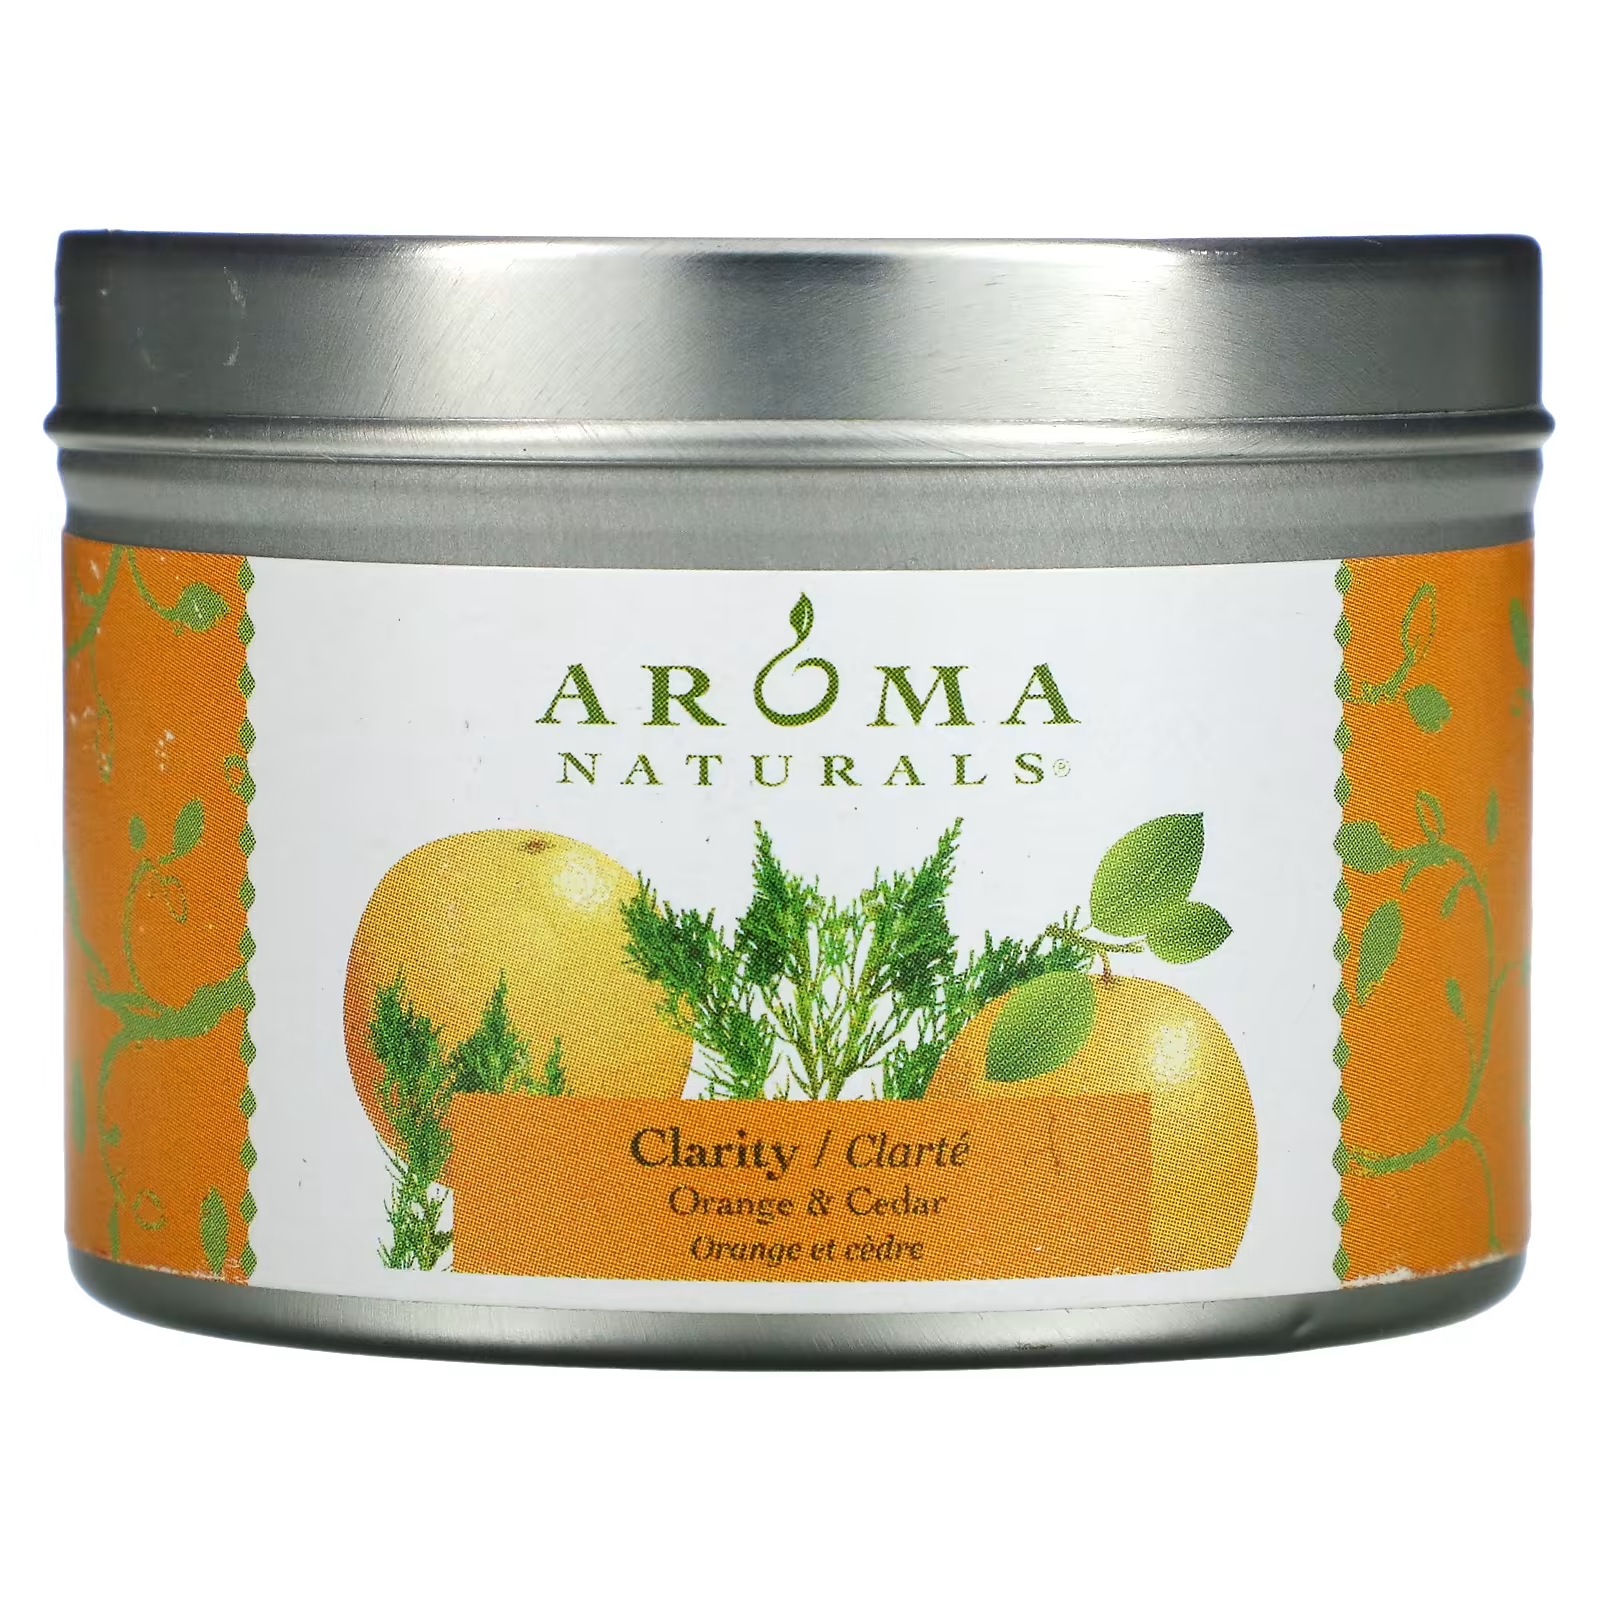 Ароматическая свеча Aroma Naturals Soy VegePure Clarity с ароматом апельсина и кедра, 79,38 г